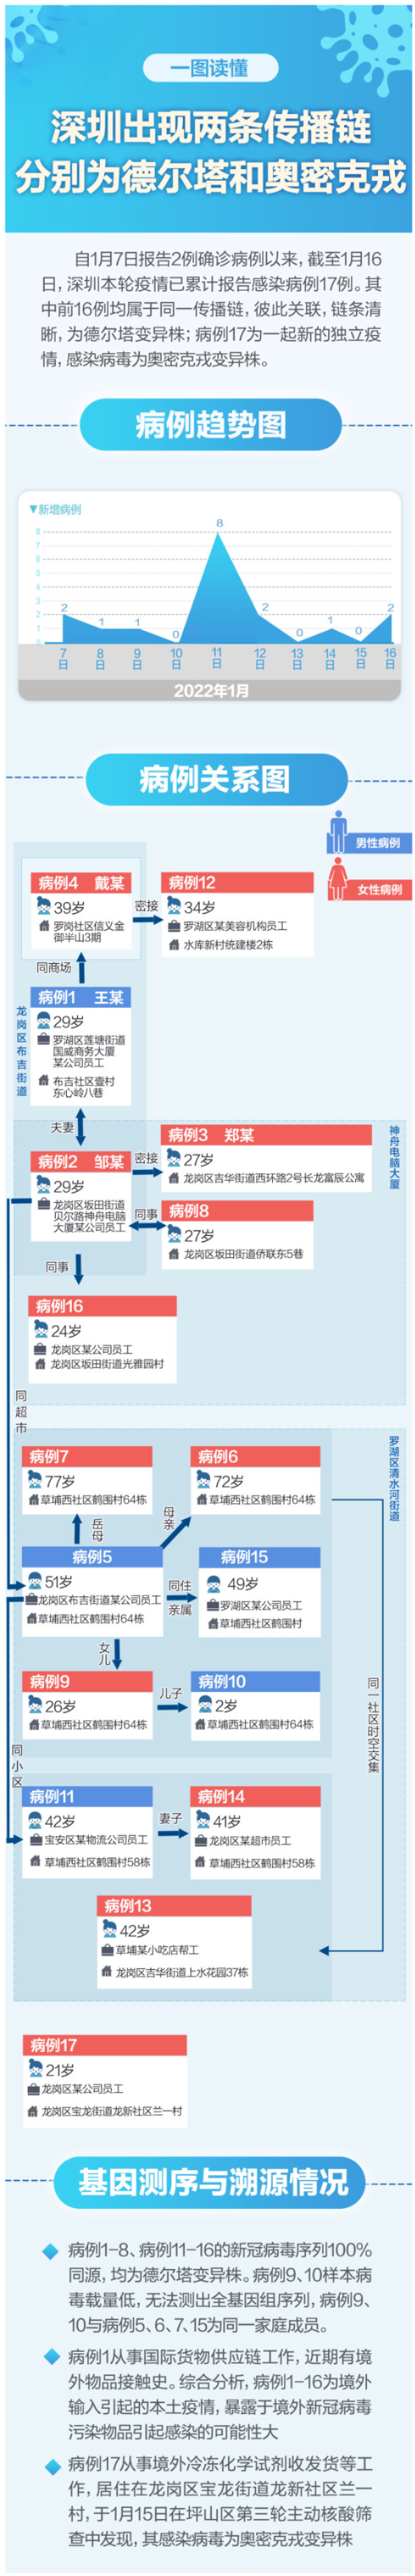 深圳同时迎战德尔塔和奥密克戎 两条传播链一图读懂